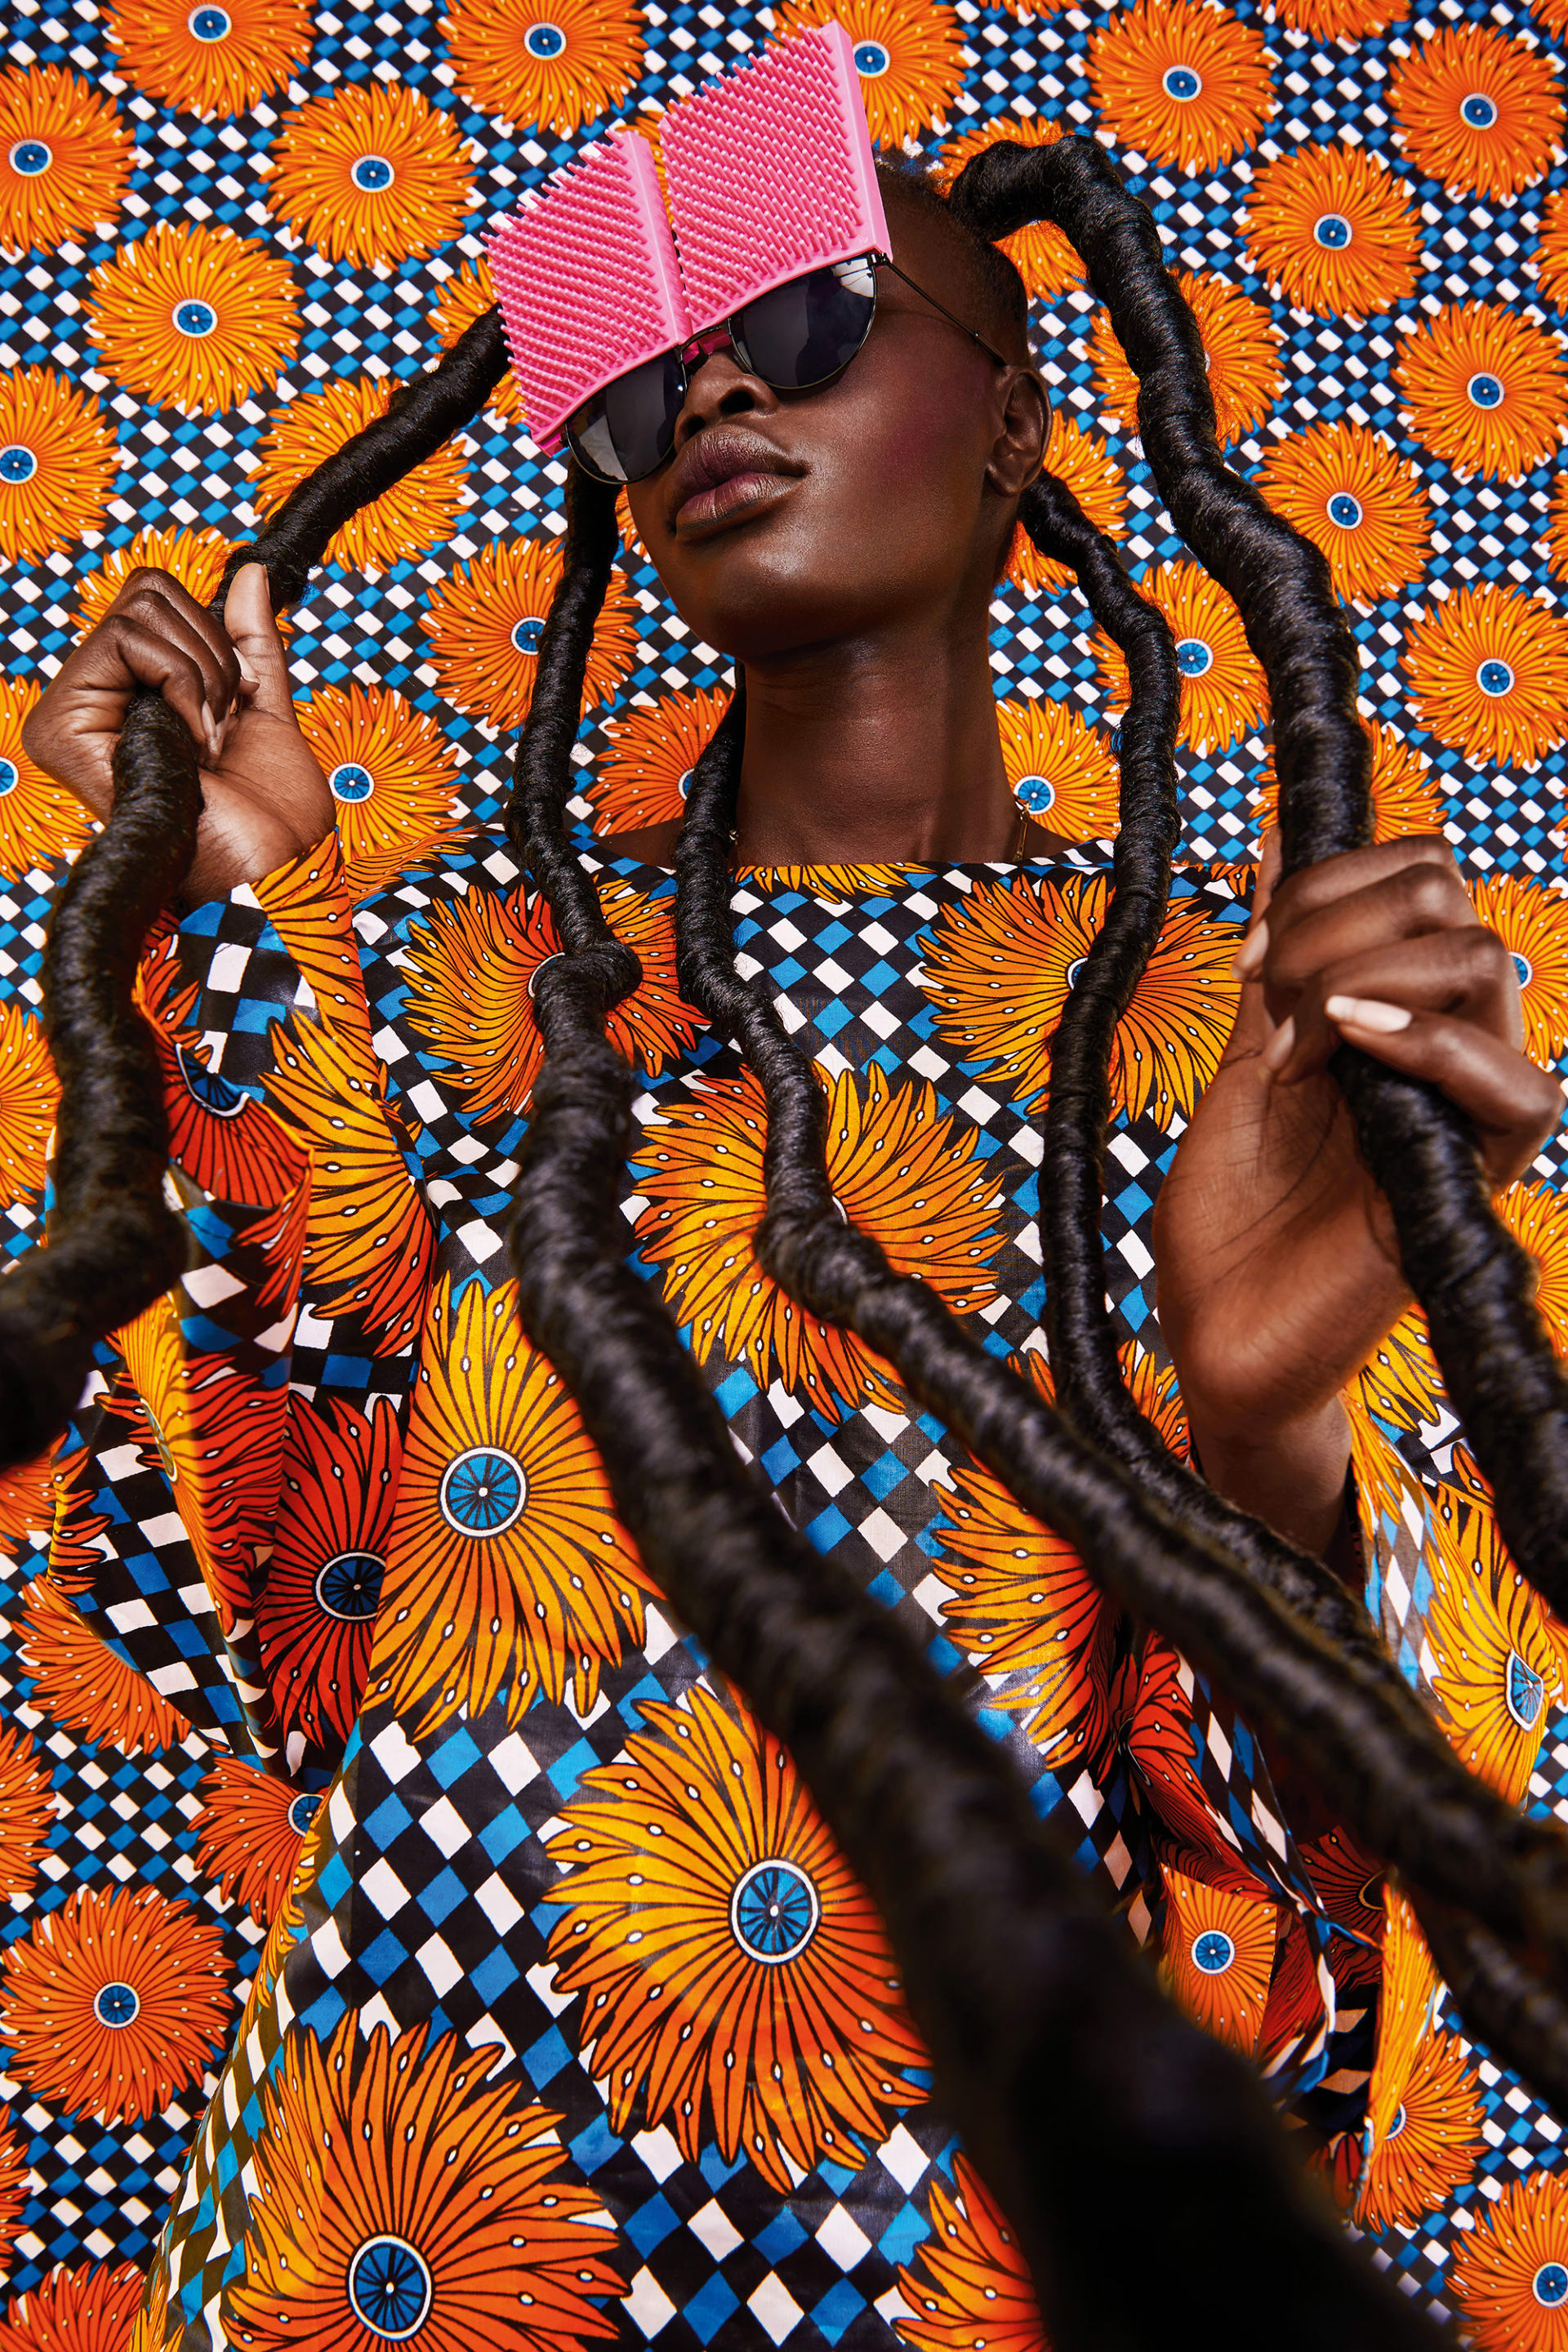 مصورة كينية تحتفي بالجمال والثقافة الأفريقية